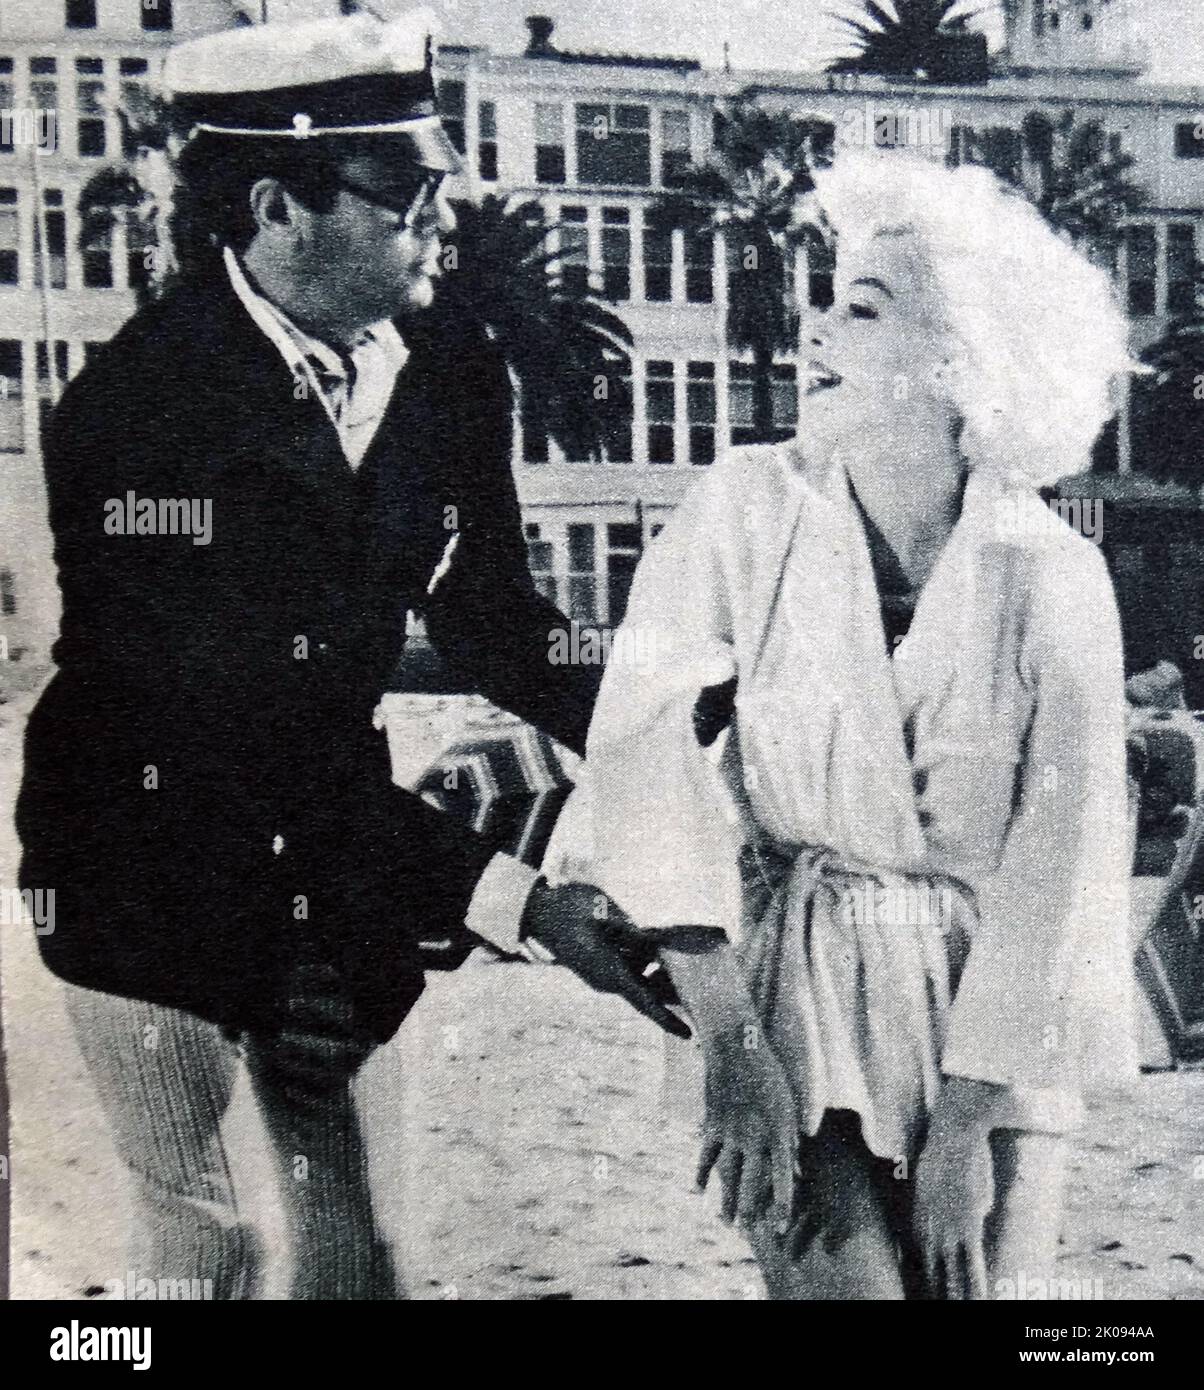 Revisión periodística de la película de 1959 Some Like It Hot, fotografía de Tony Curtis y Marilyn Monroe. Foto de stock